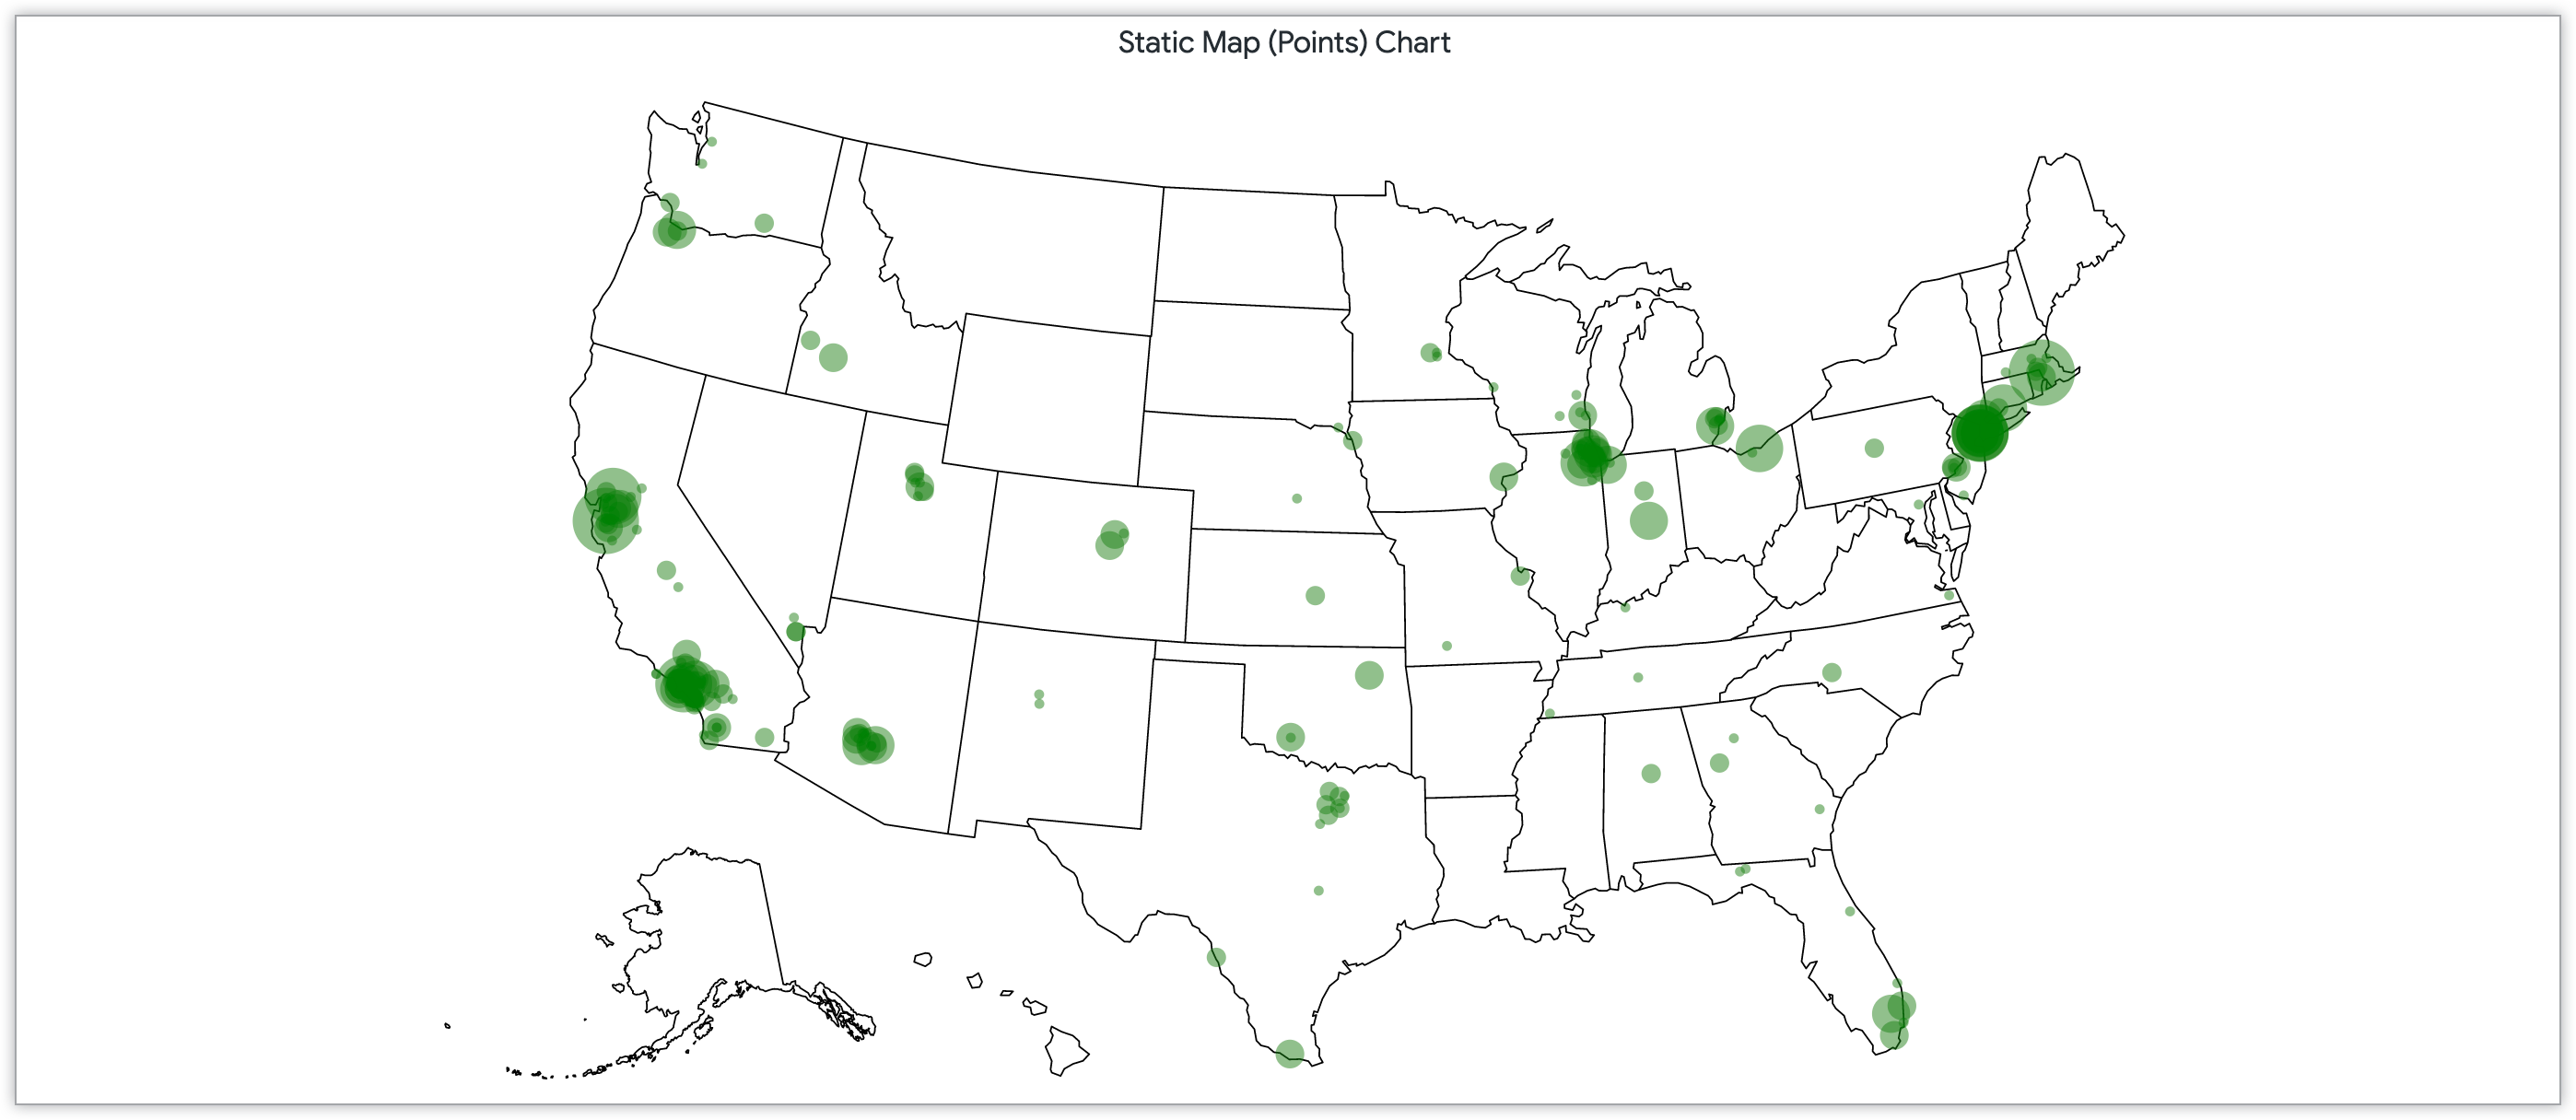 미국 전역의 우편번호에 따라 고객 크기가 결정된 포인트가 포함된 정적 지도 차트